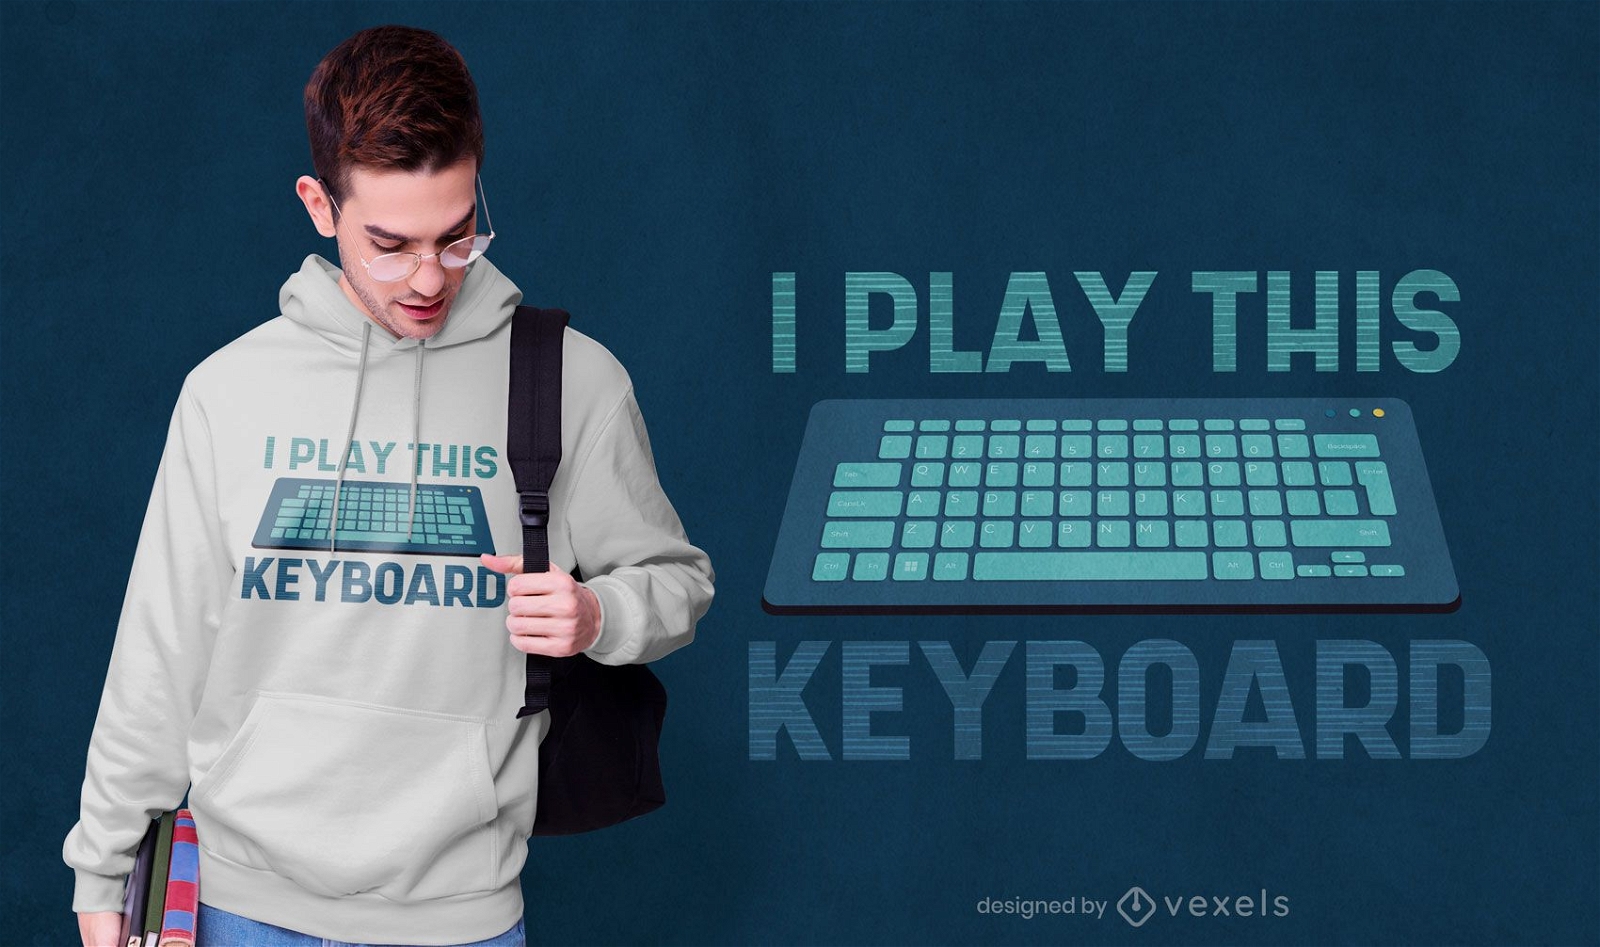 Eu toco o design da camiseta do teclado